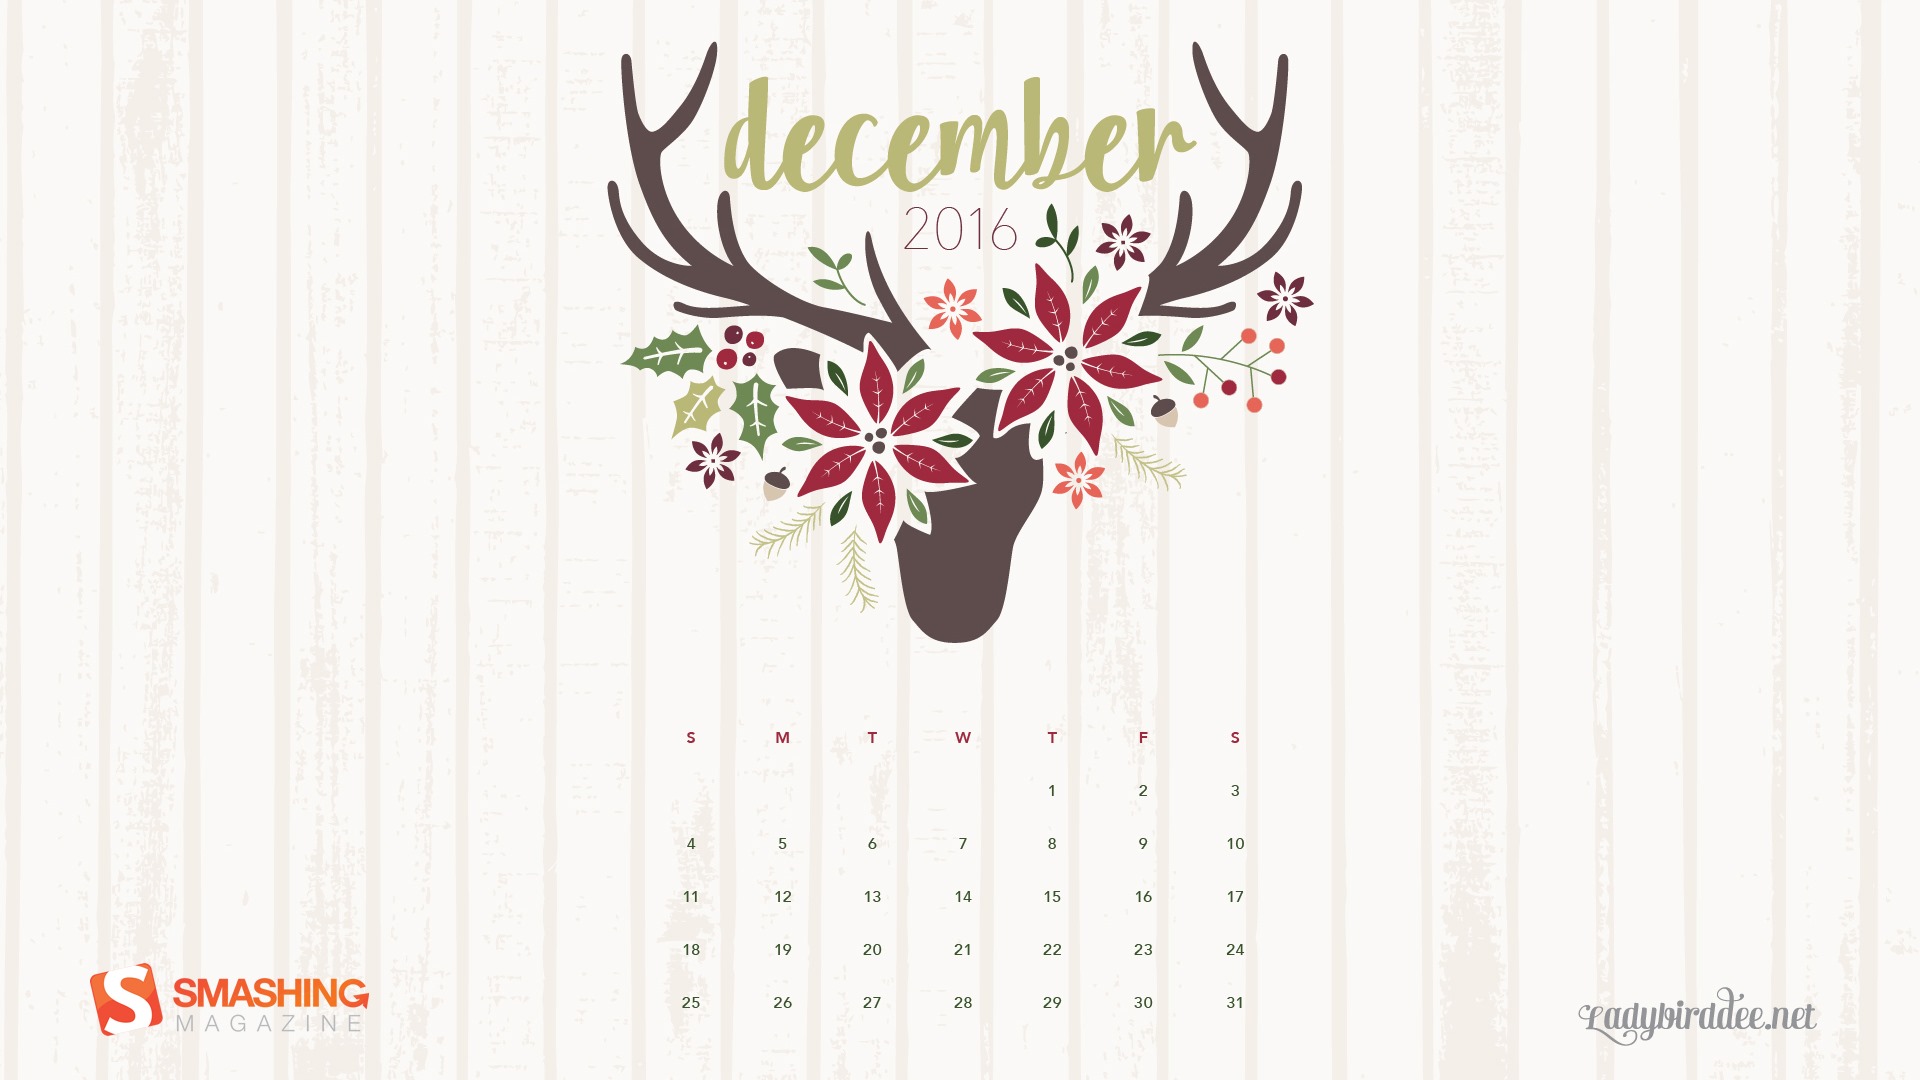 Décembre 2016 Fond d'écran calendrier thème Noël (1) #28 - 1920x1080